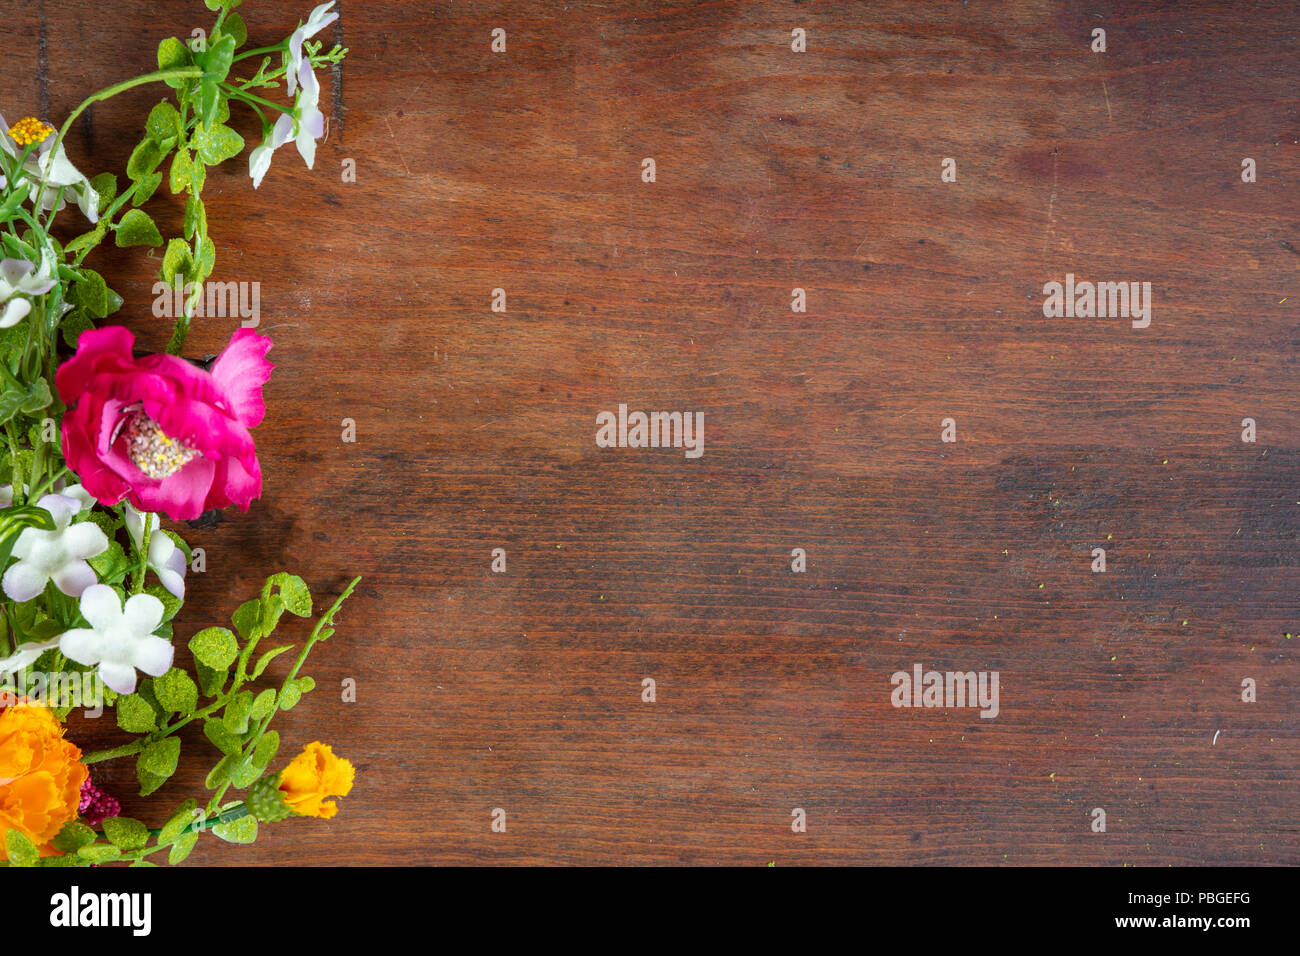 Bunte Blume Grenze auf hölzernen Hintergrund, Kopieren, Ansicht von oben Stockfoto